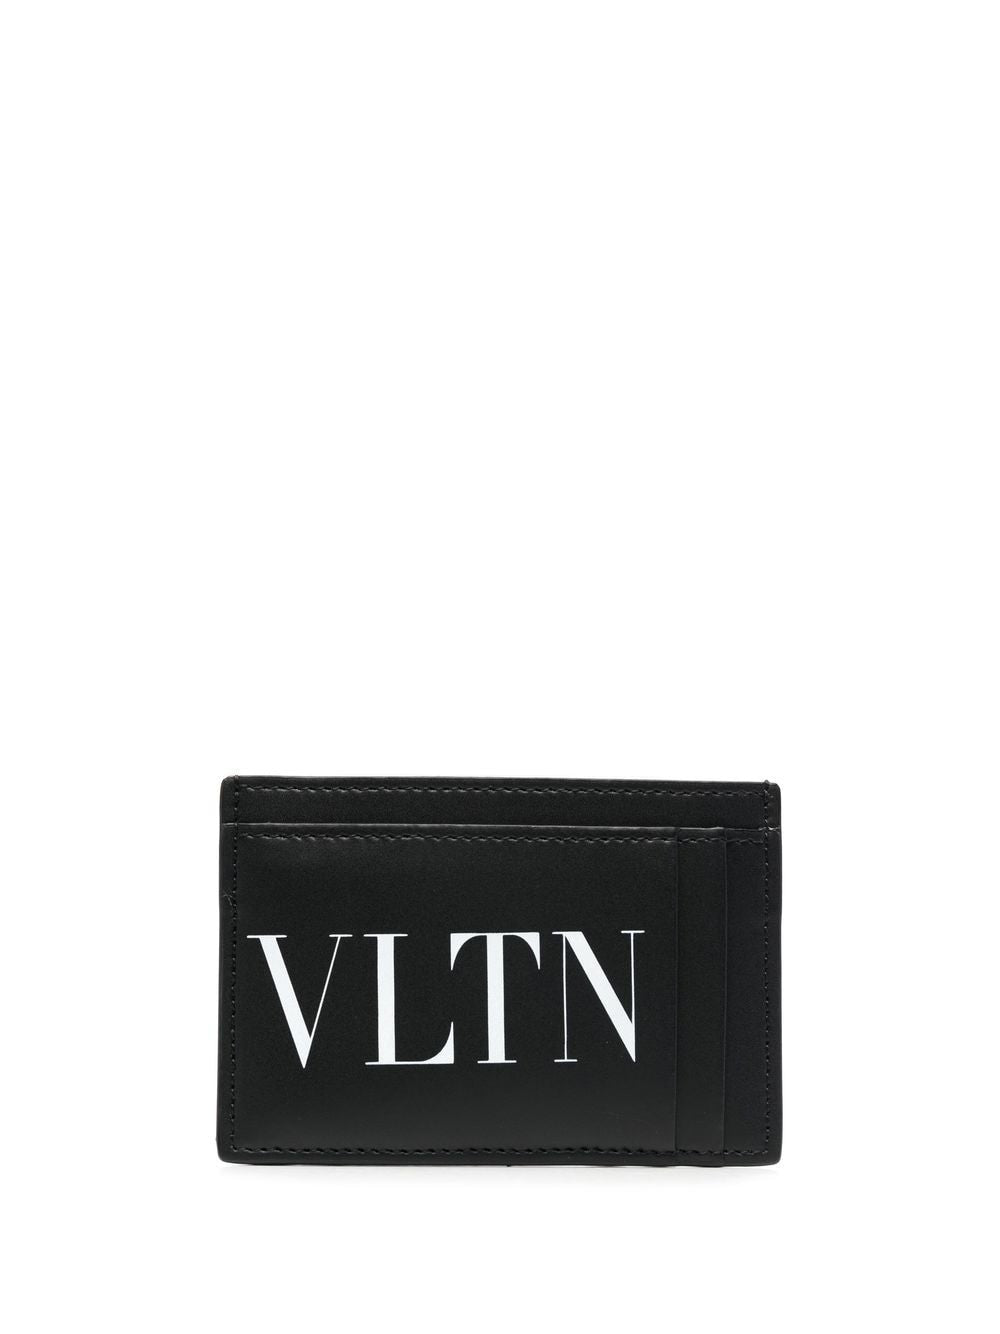 VLTN logo compact cardholder